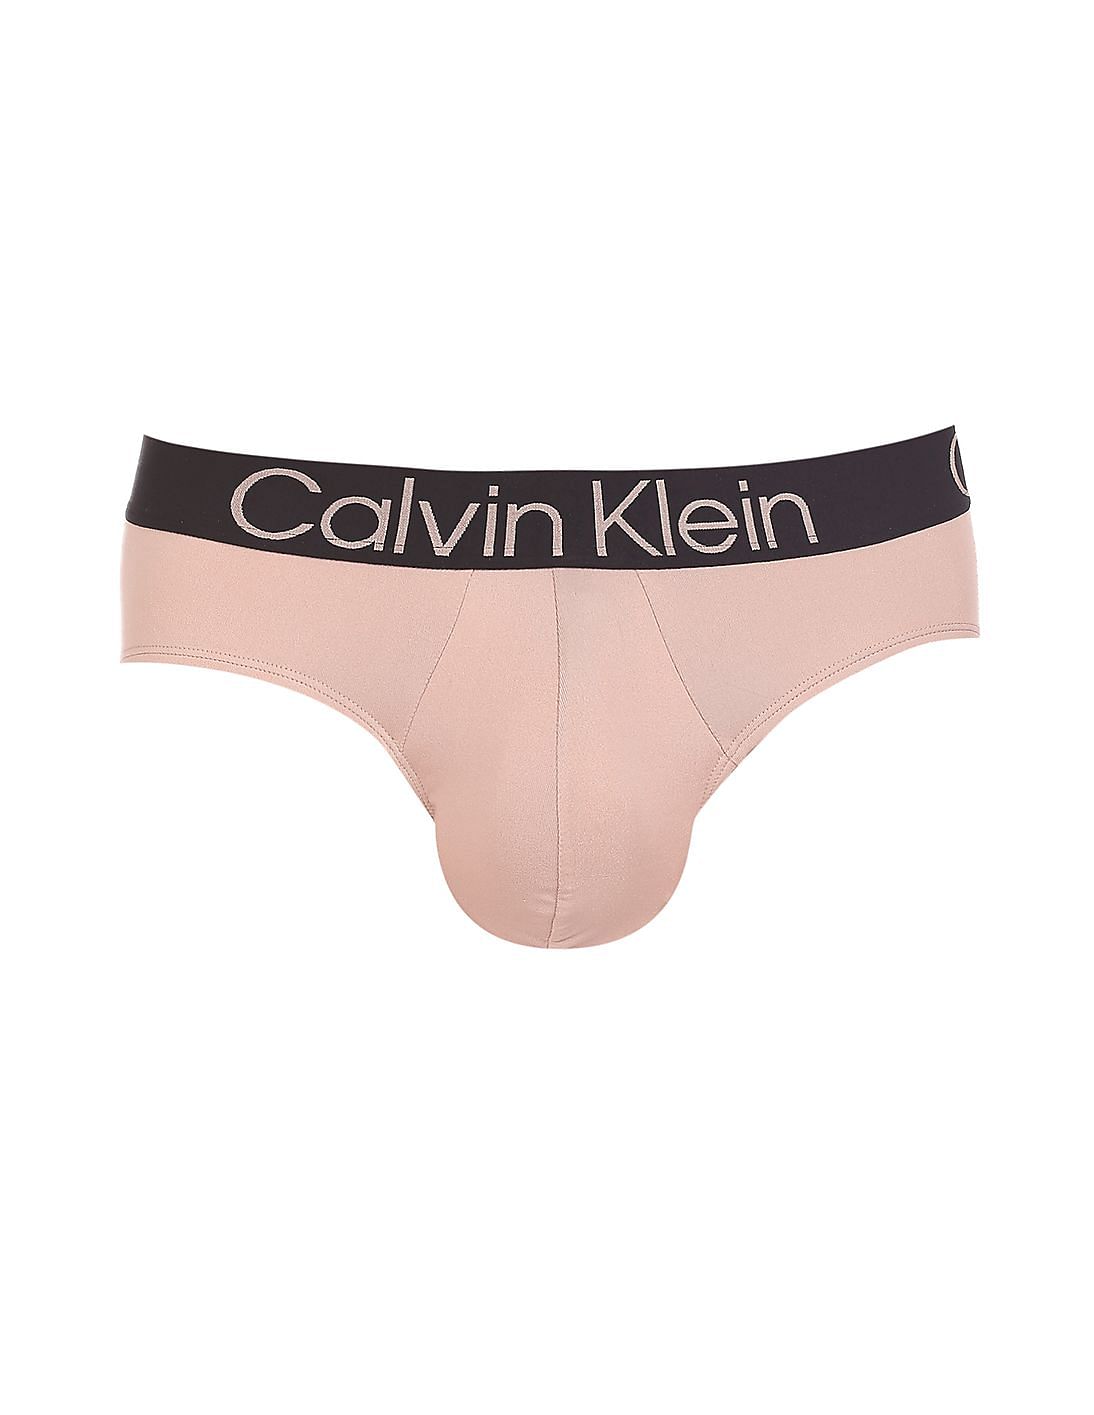 Calvin Klein] Silk Touch Logo Hipster (D3049) – NEWMALEWEAR